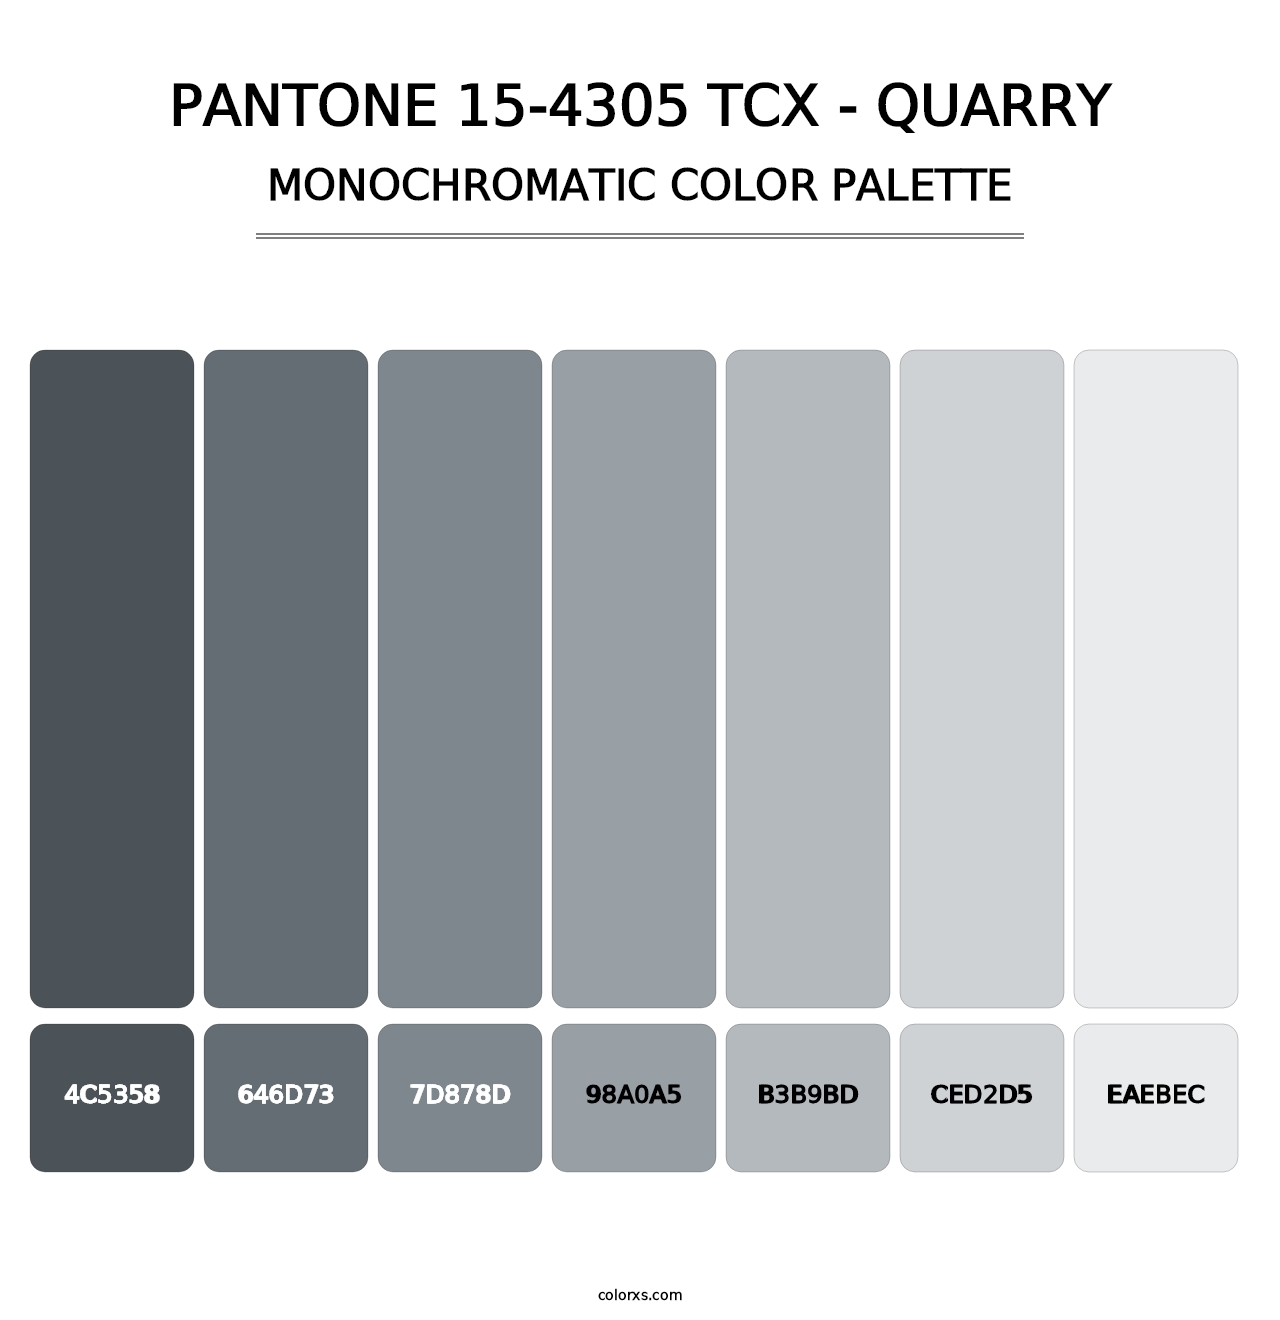 PANTONE 15-4305 TCX - Quarry - Monochromatic Color Palette